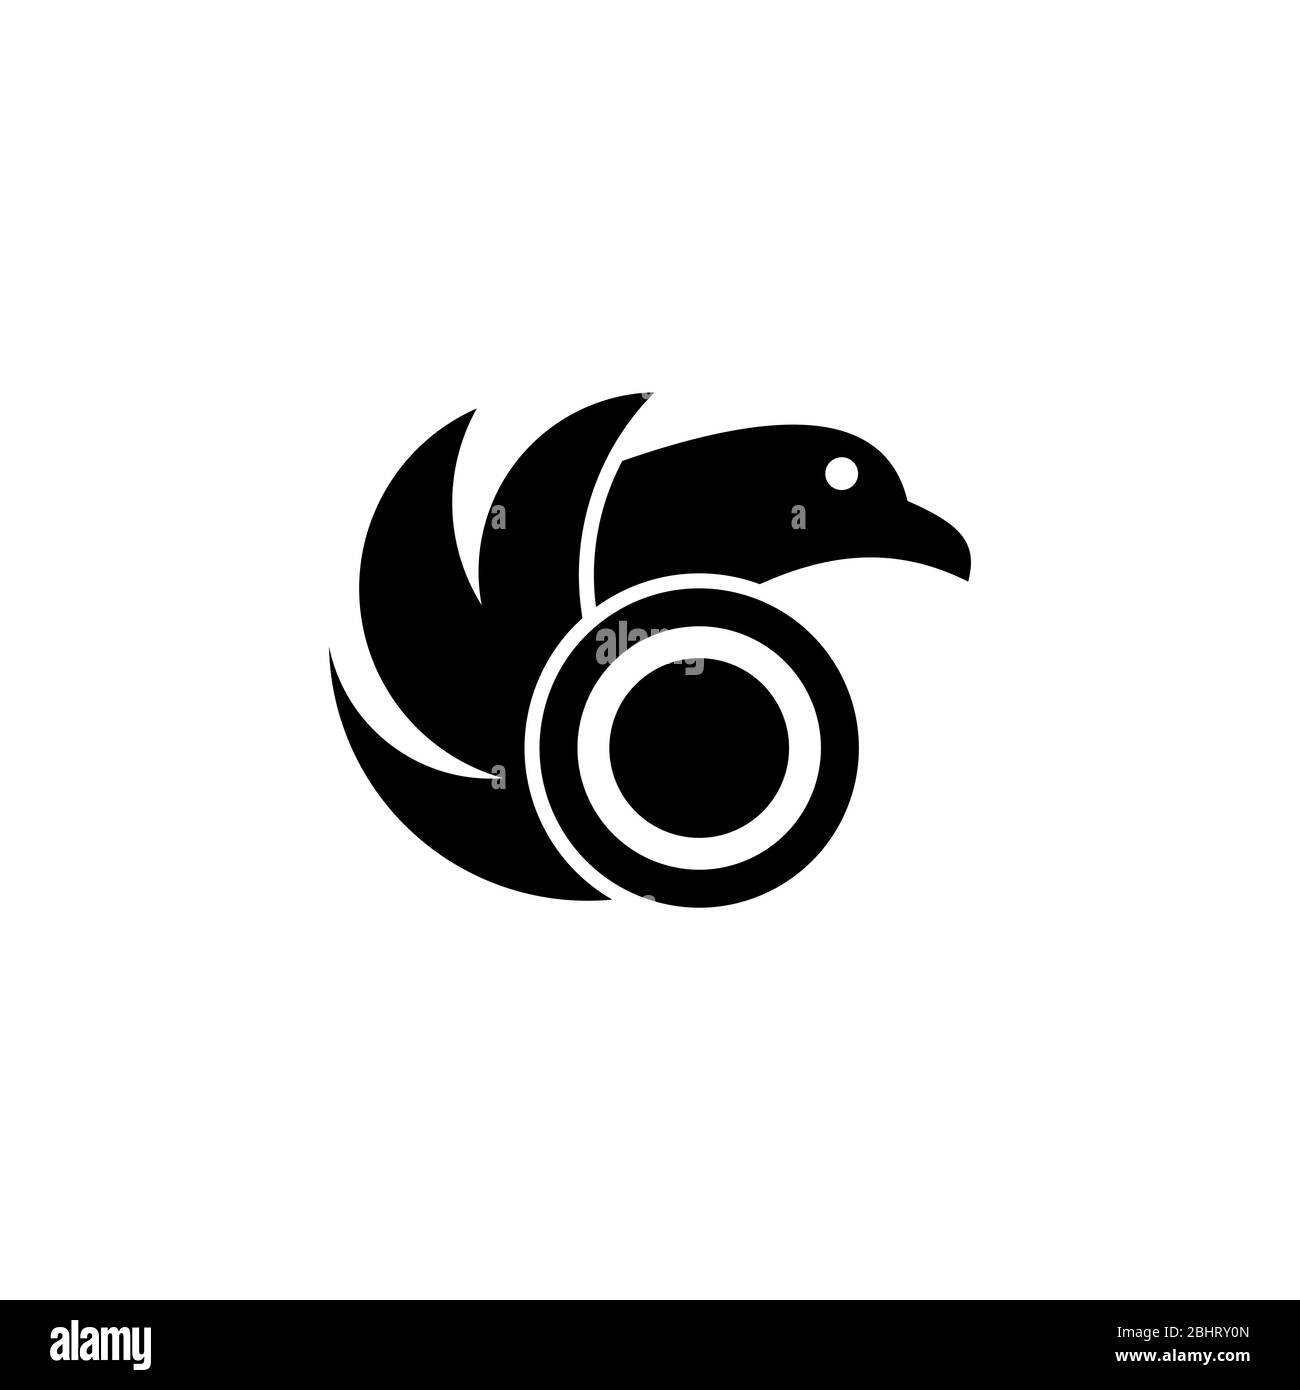 Modello di logo grafico di uccello, logo aziendale astratto, design vettoriale di uccello creativo, isolato su sfondo bianco. Illustrazione Vettoriale